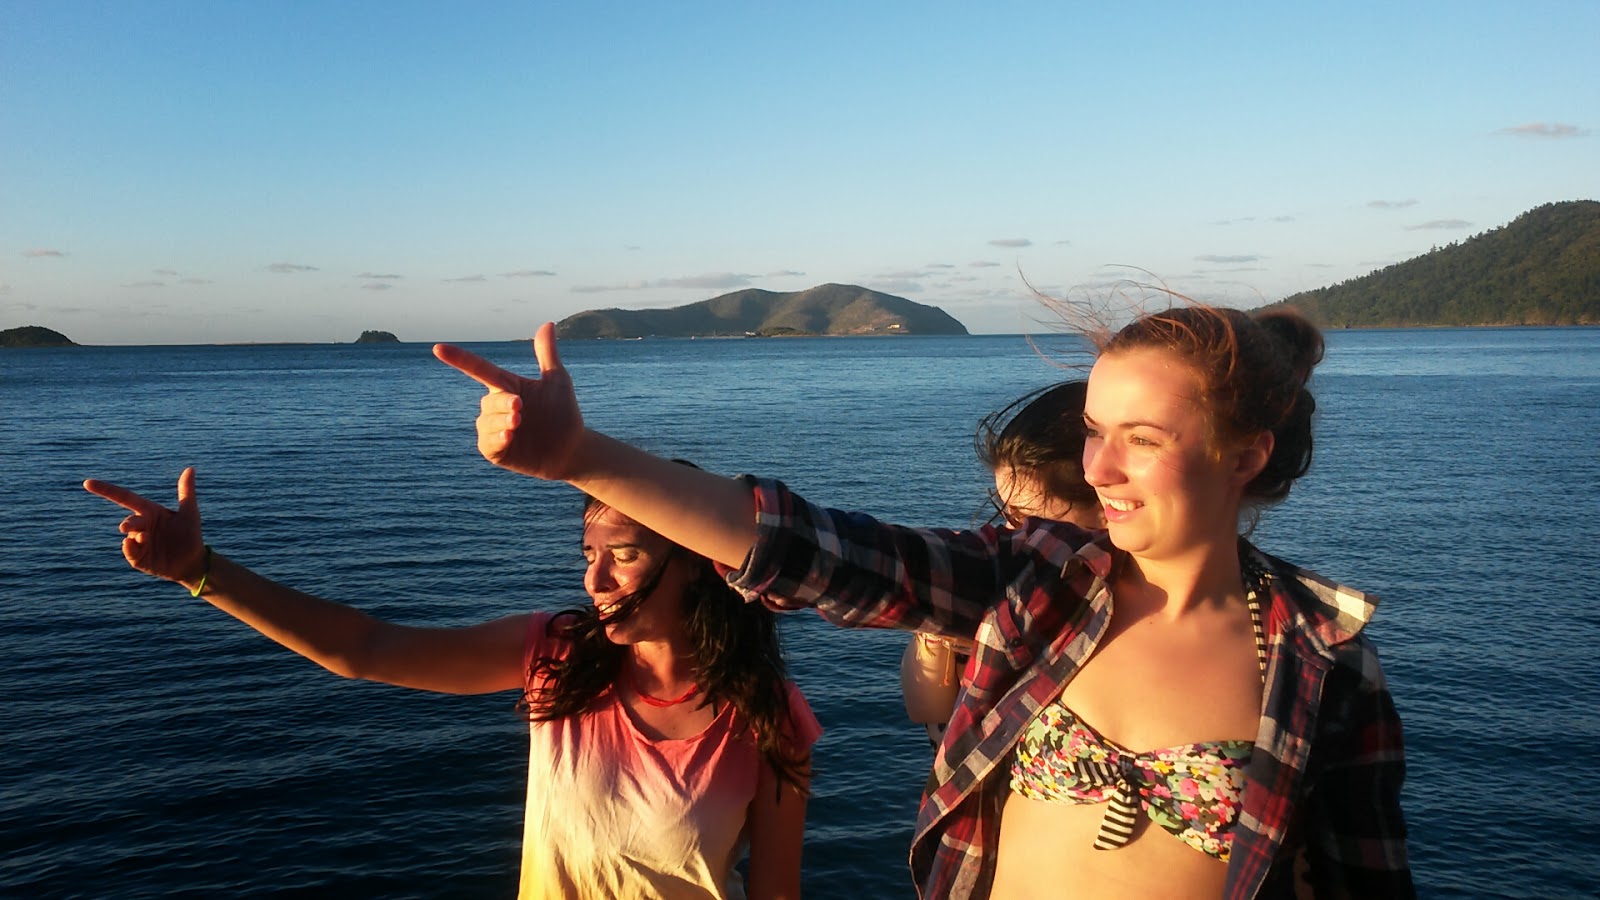 Nikos Reise 2013-2014: Sailing along the whitsunday islands